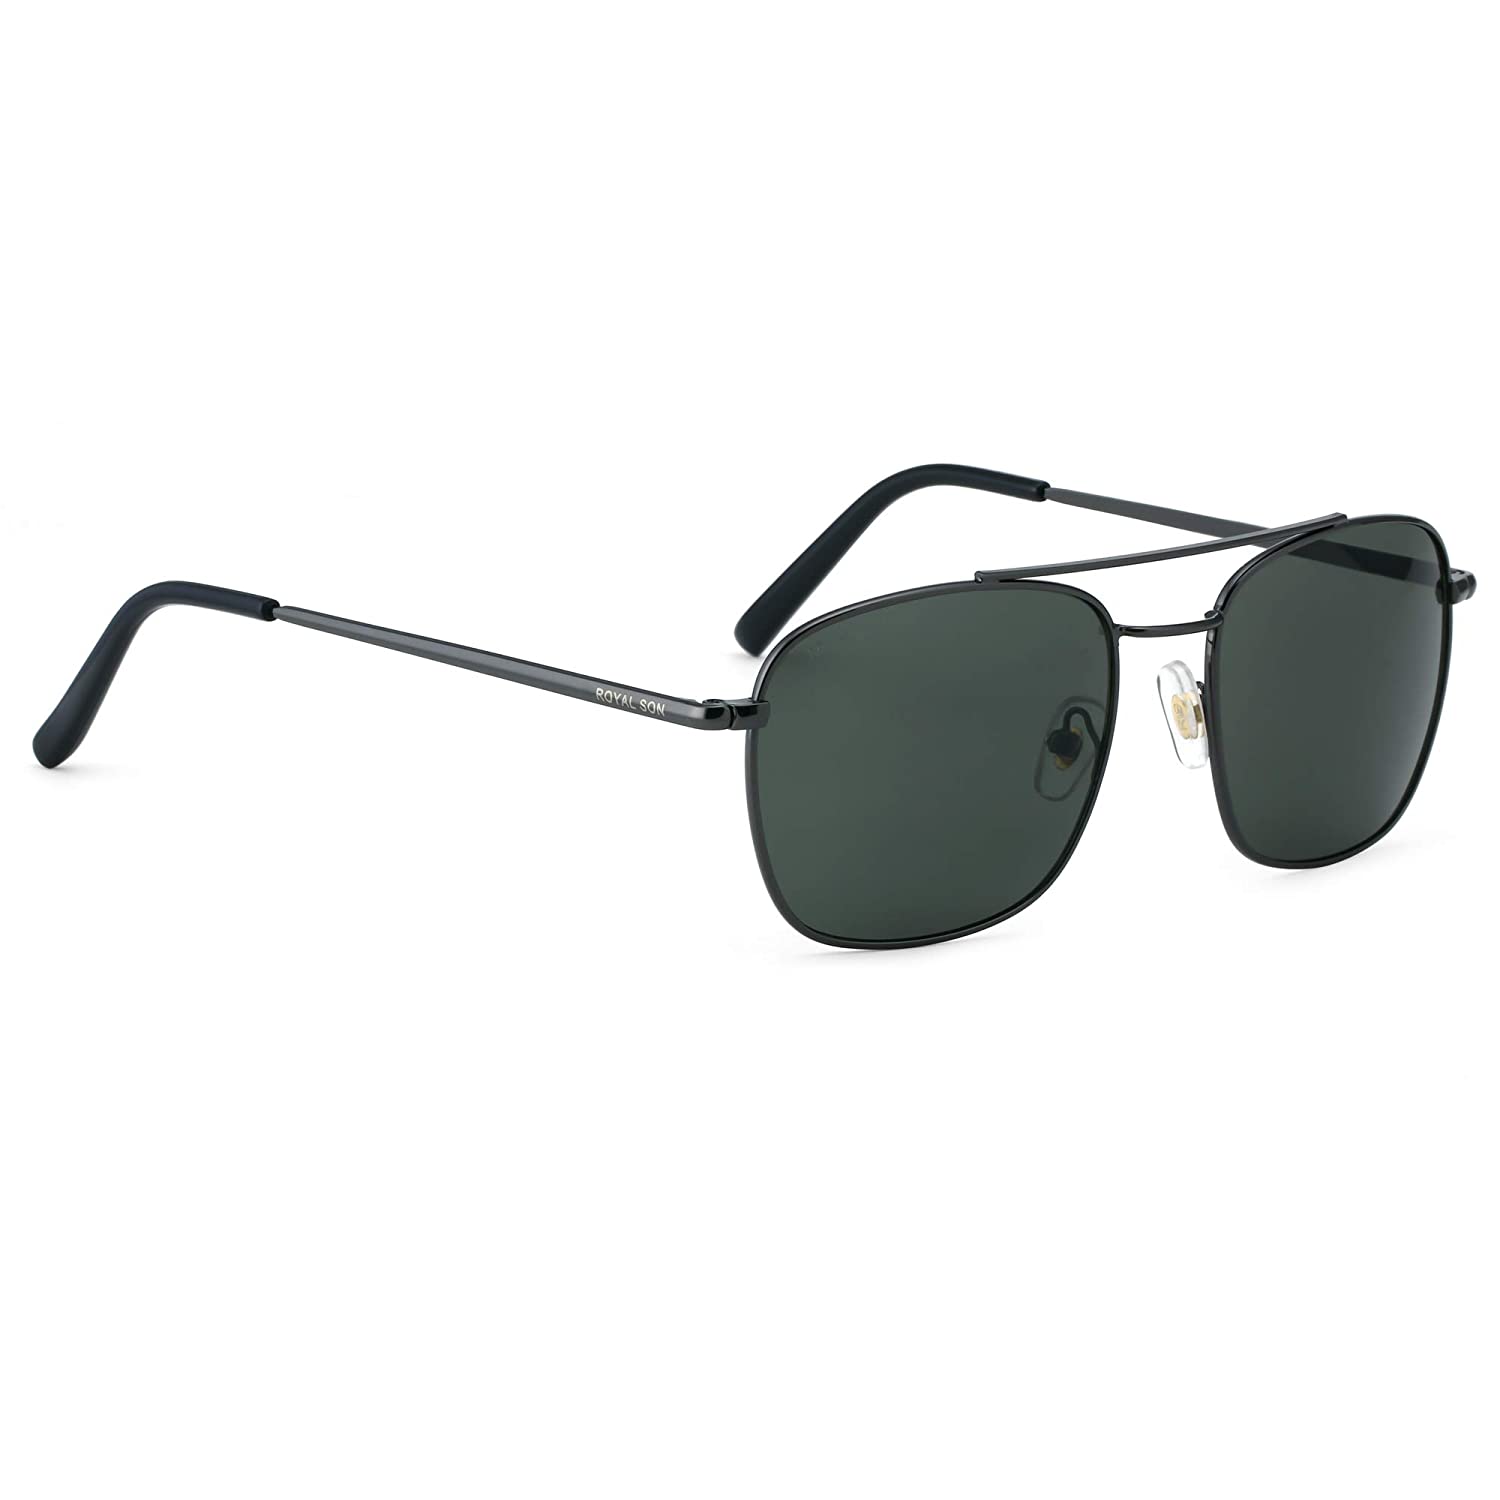 Buy Fastrack Men Sunglasses P315GR1 - Sunglasses for Men 1038679 | Myntra